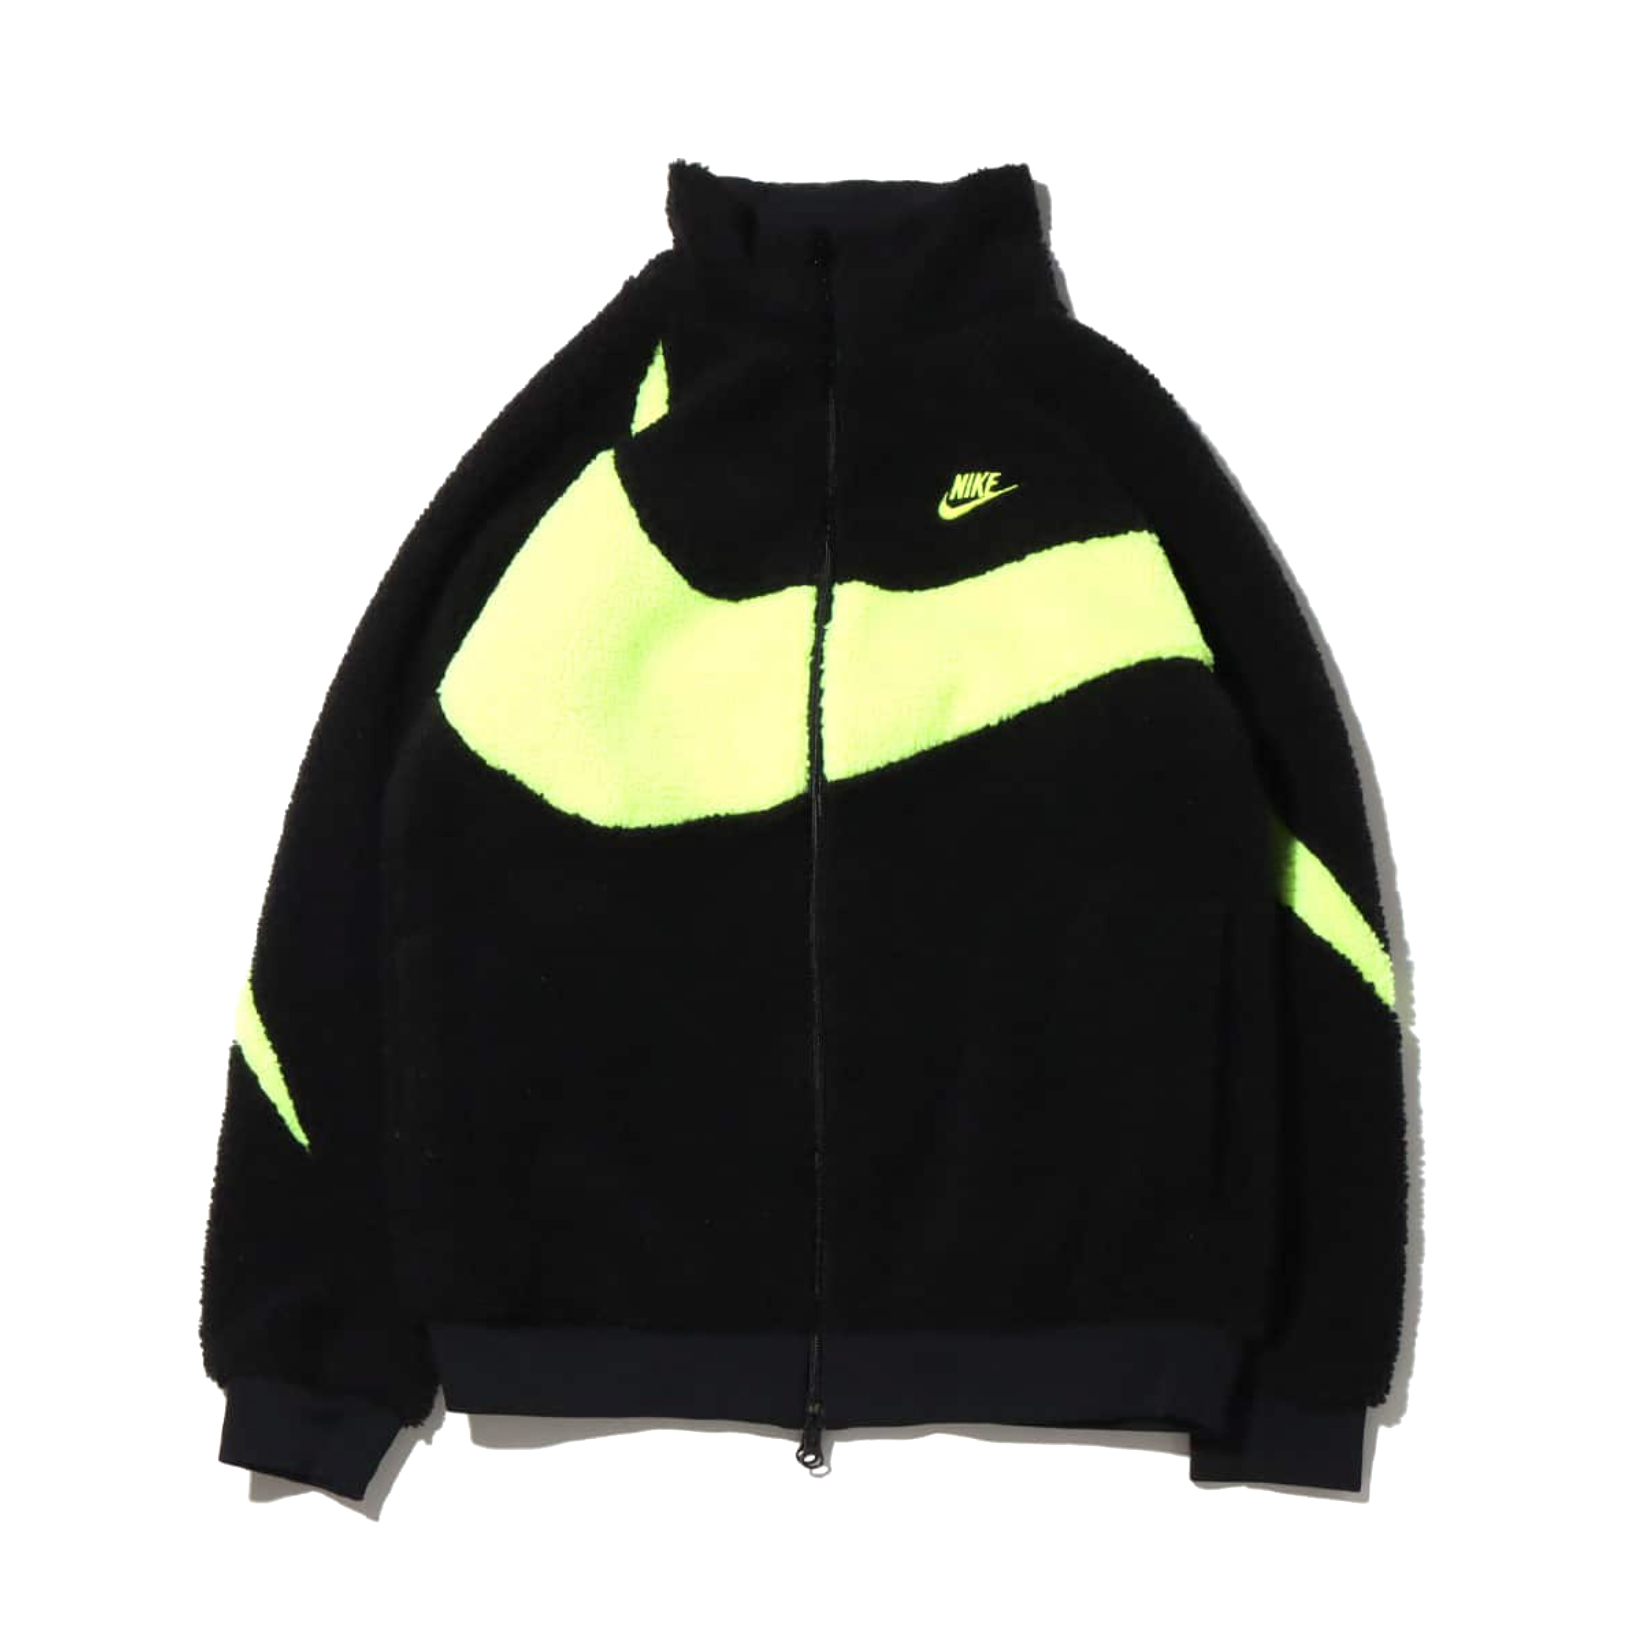 Nike Big Swoosh Reversible Boa Jacket (Asia Sizing) Black White 